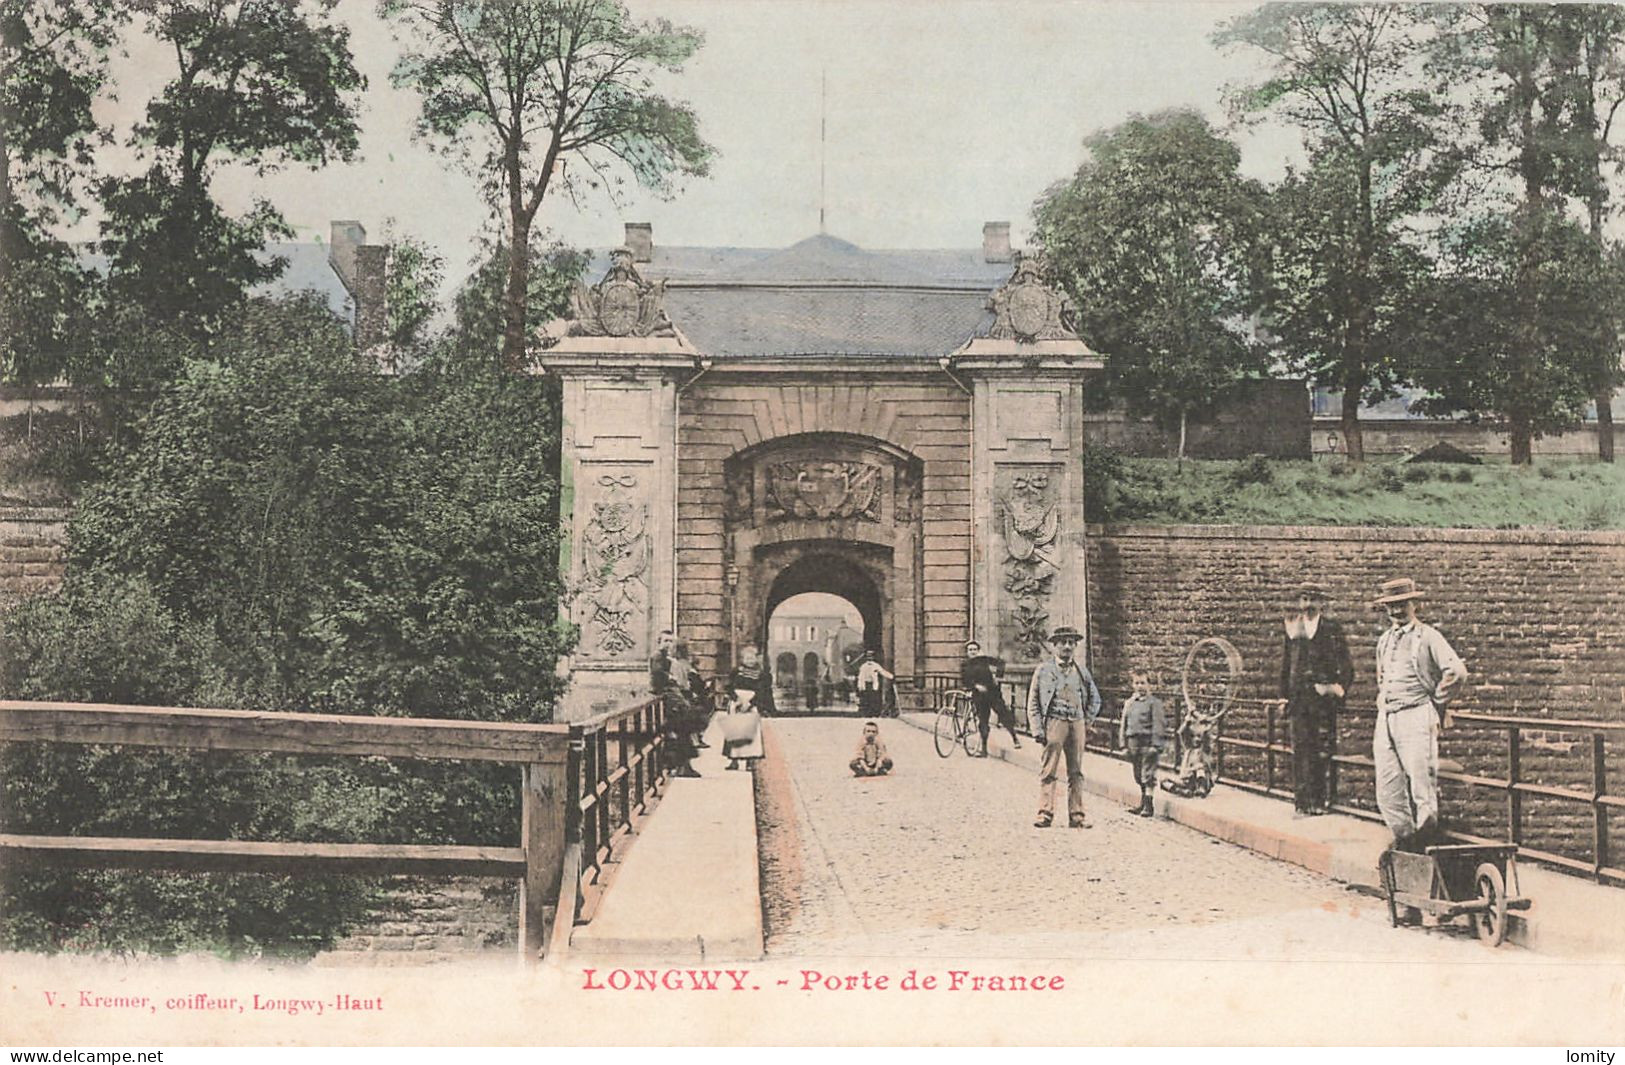 Destockage lot de 33 cartes postales CPA de Meurthe et Moselle Luneville Domjevin Toul Nancy Longwy Bas Pont à Mousson